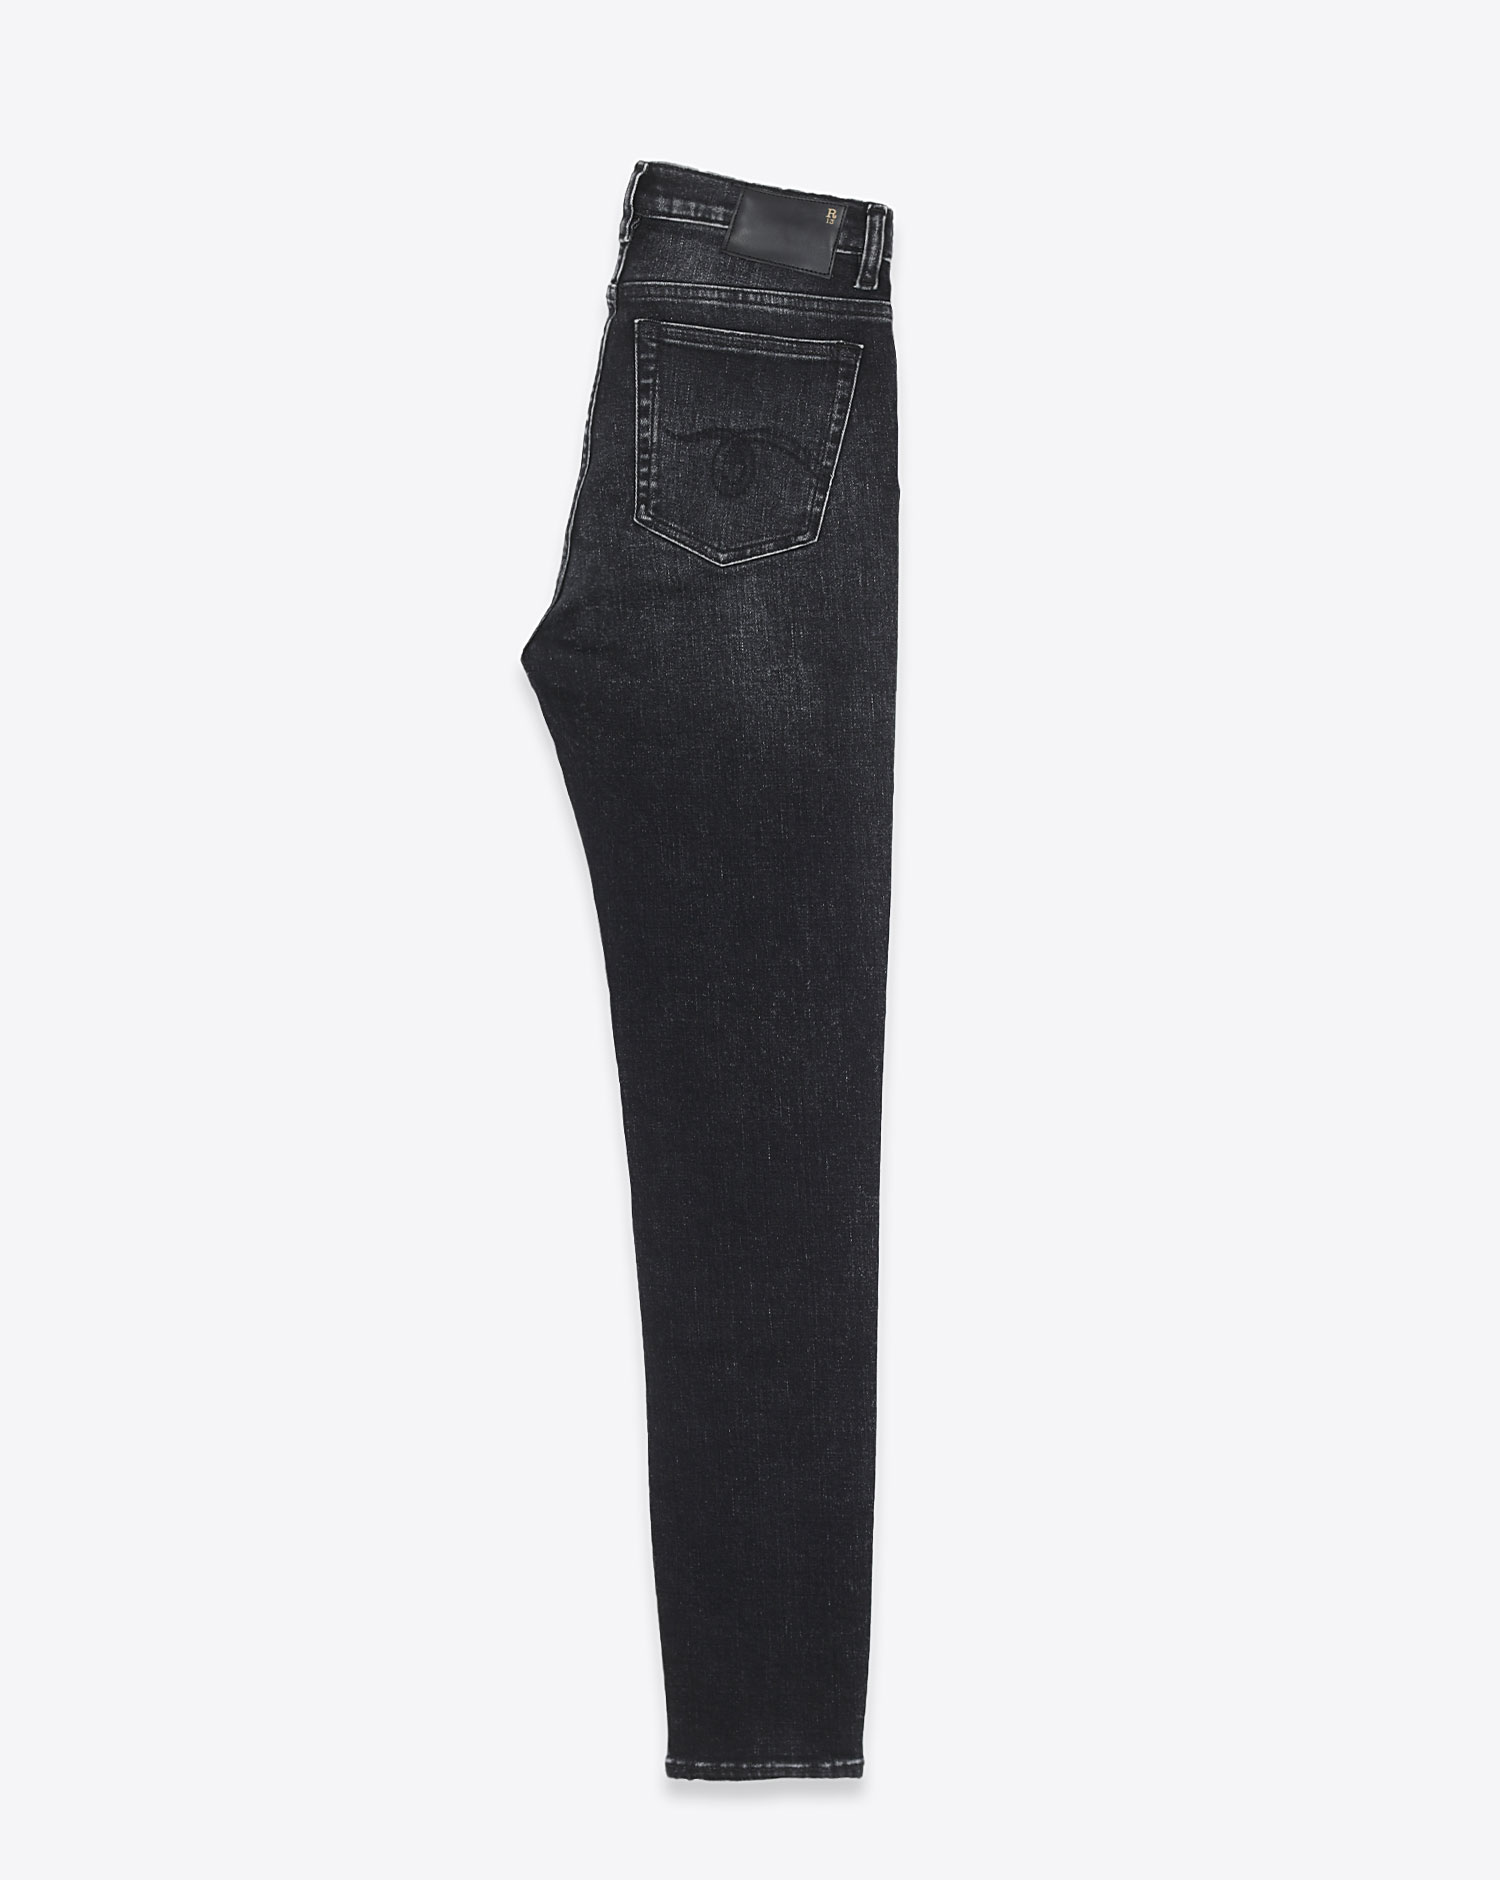 Jeans High Rise Skinny R13 Denim en denim noir délavé. 
